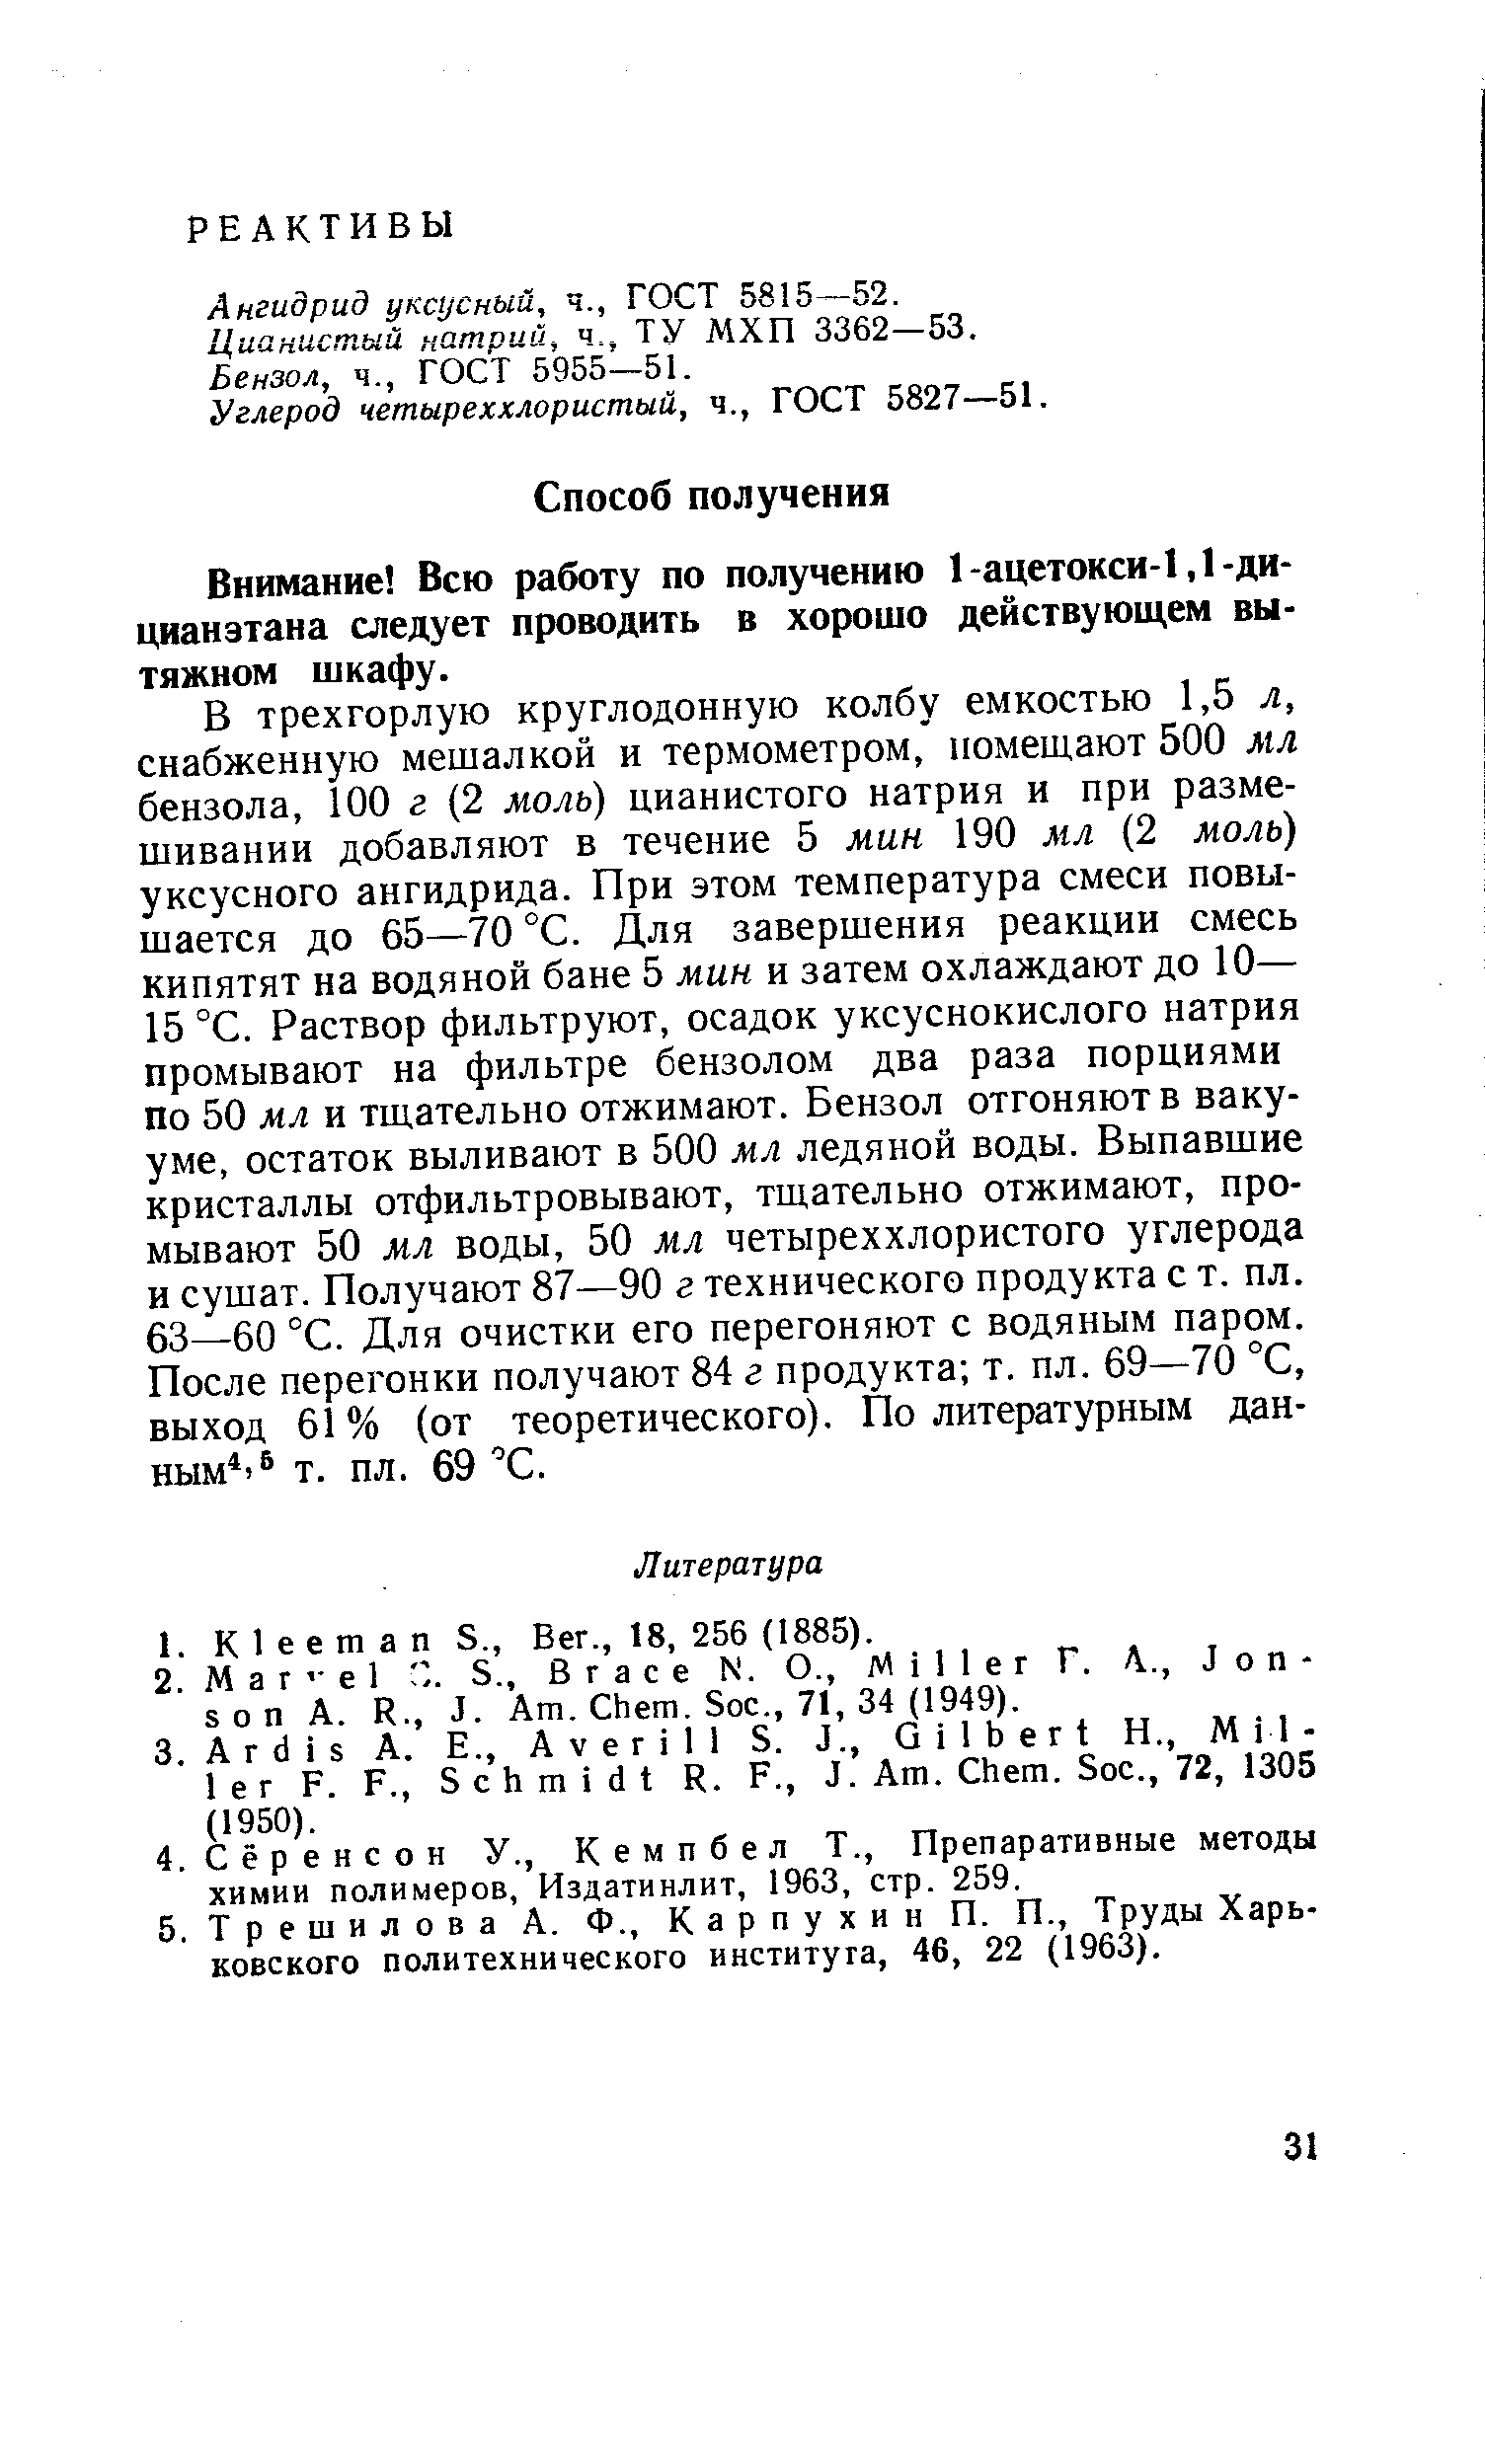 Ангидрид уксусный, ч., ГОСТ 58 5—52.